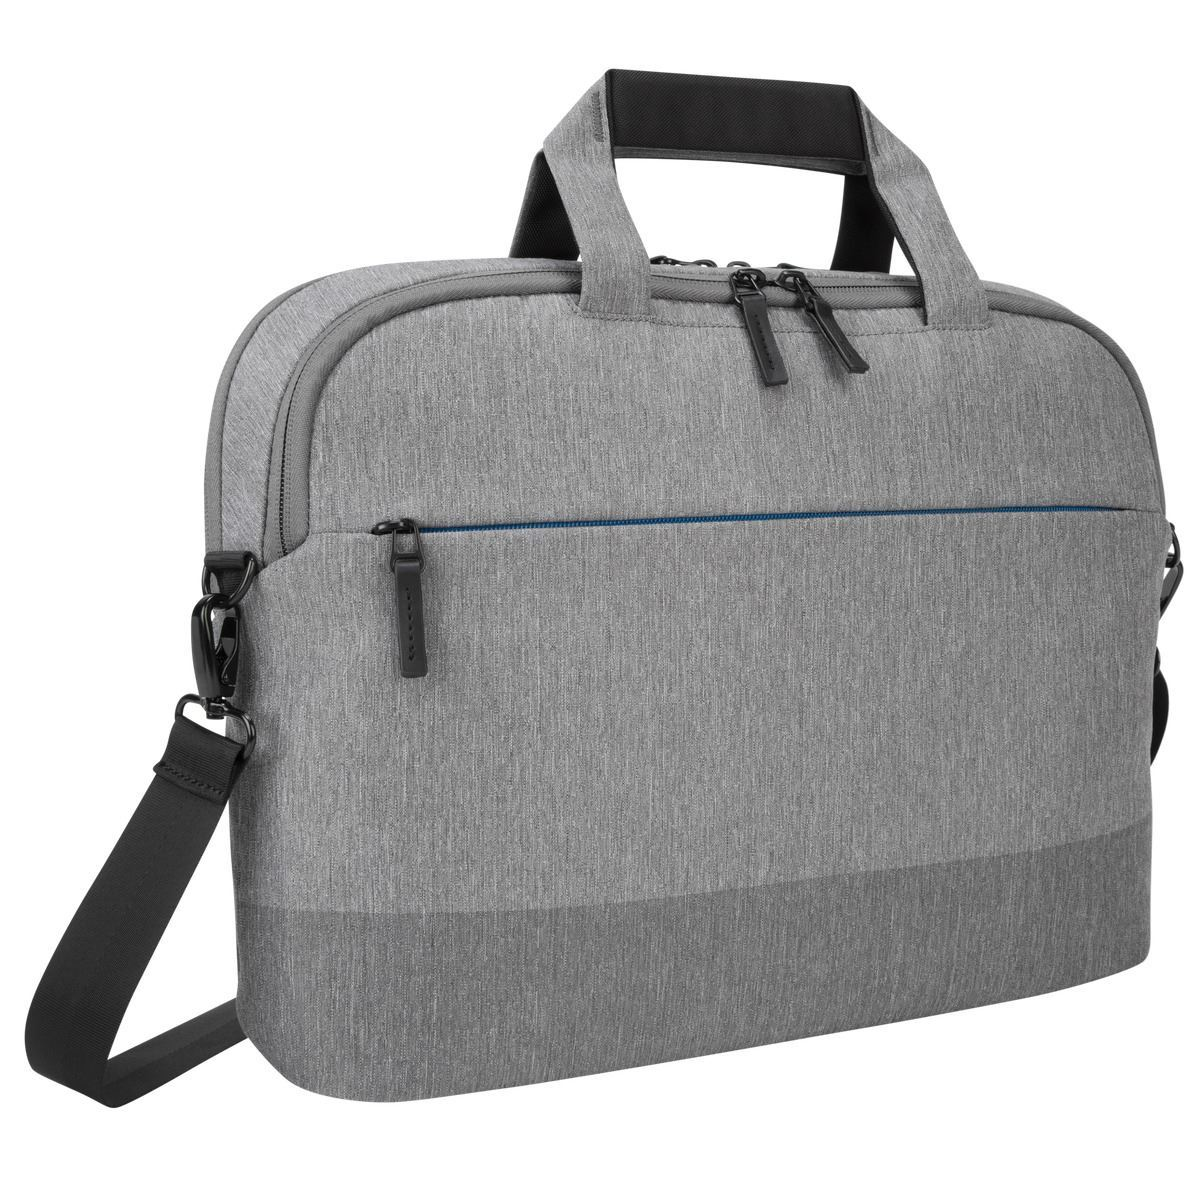 حقيبة كتف تارجوس سيتي لايت رمادية اللون تناسب الحاسوب المحمول بمقاس حتى 15.6 بوصة